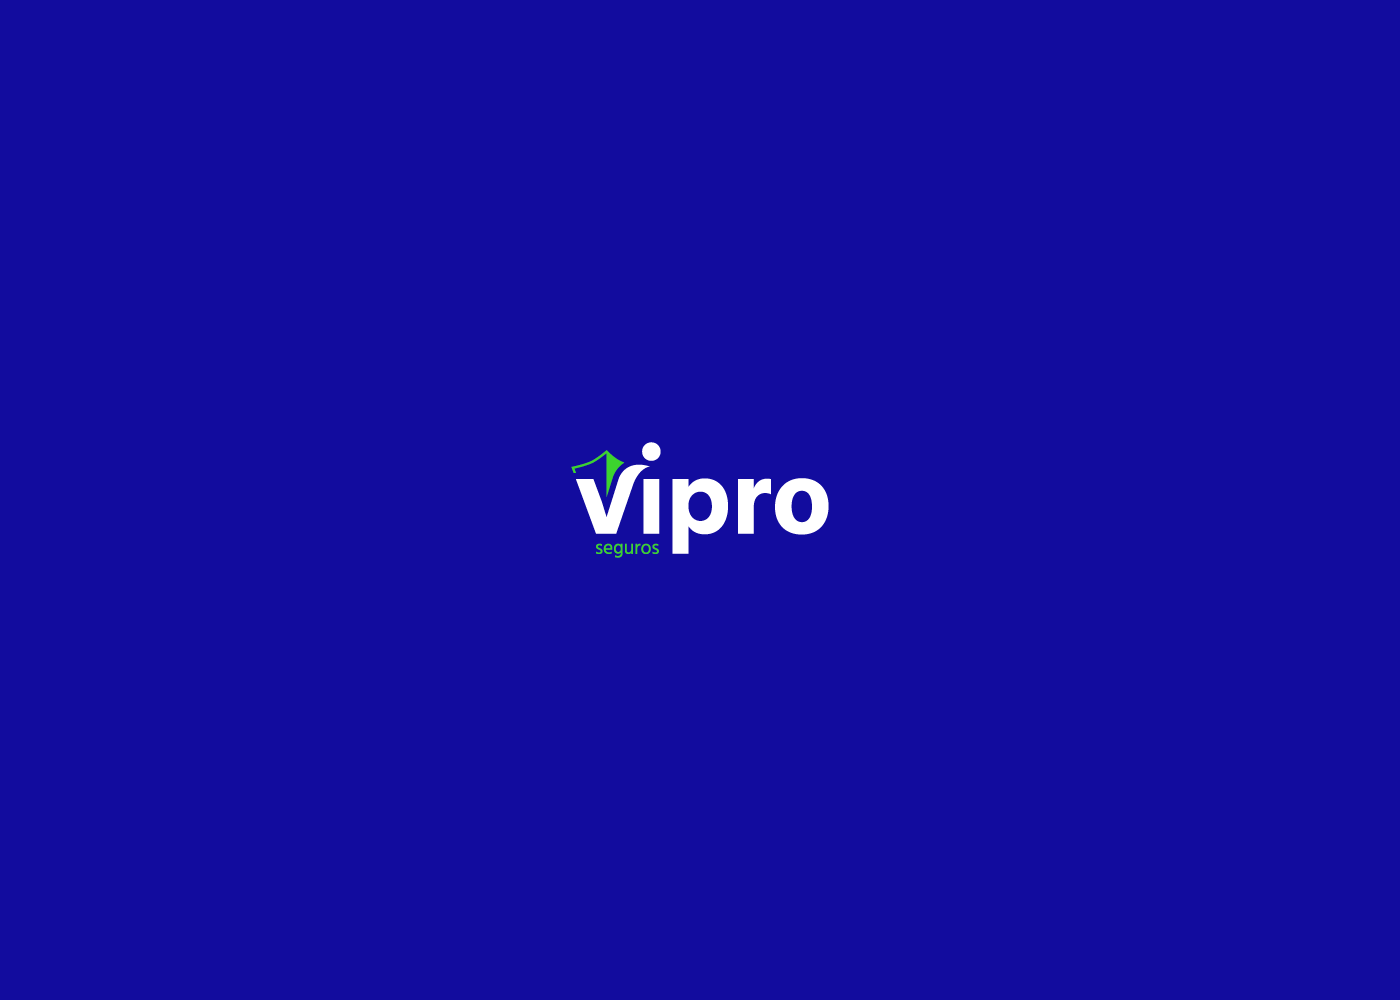 5_Vipro_seguros_logo.png